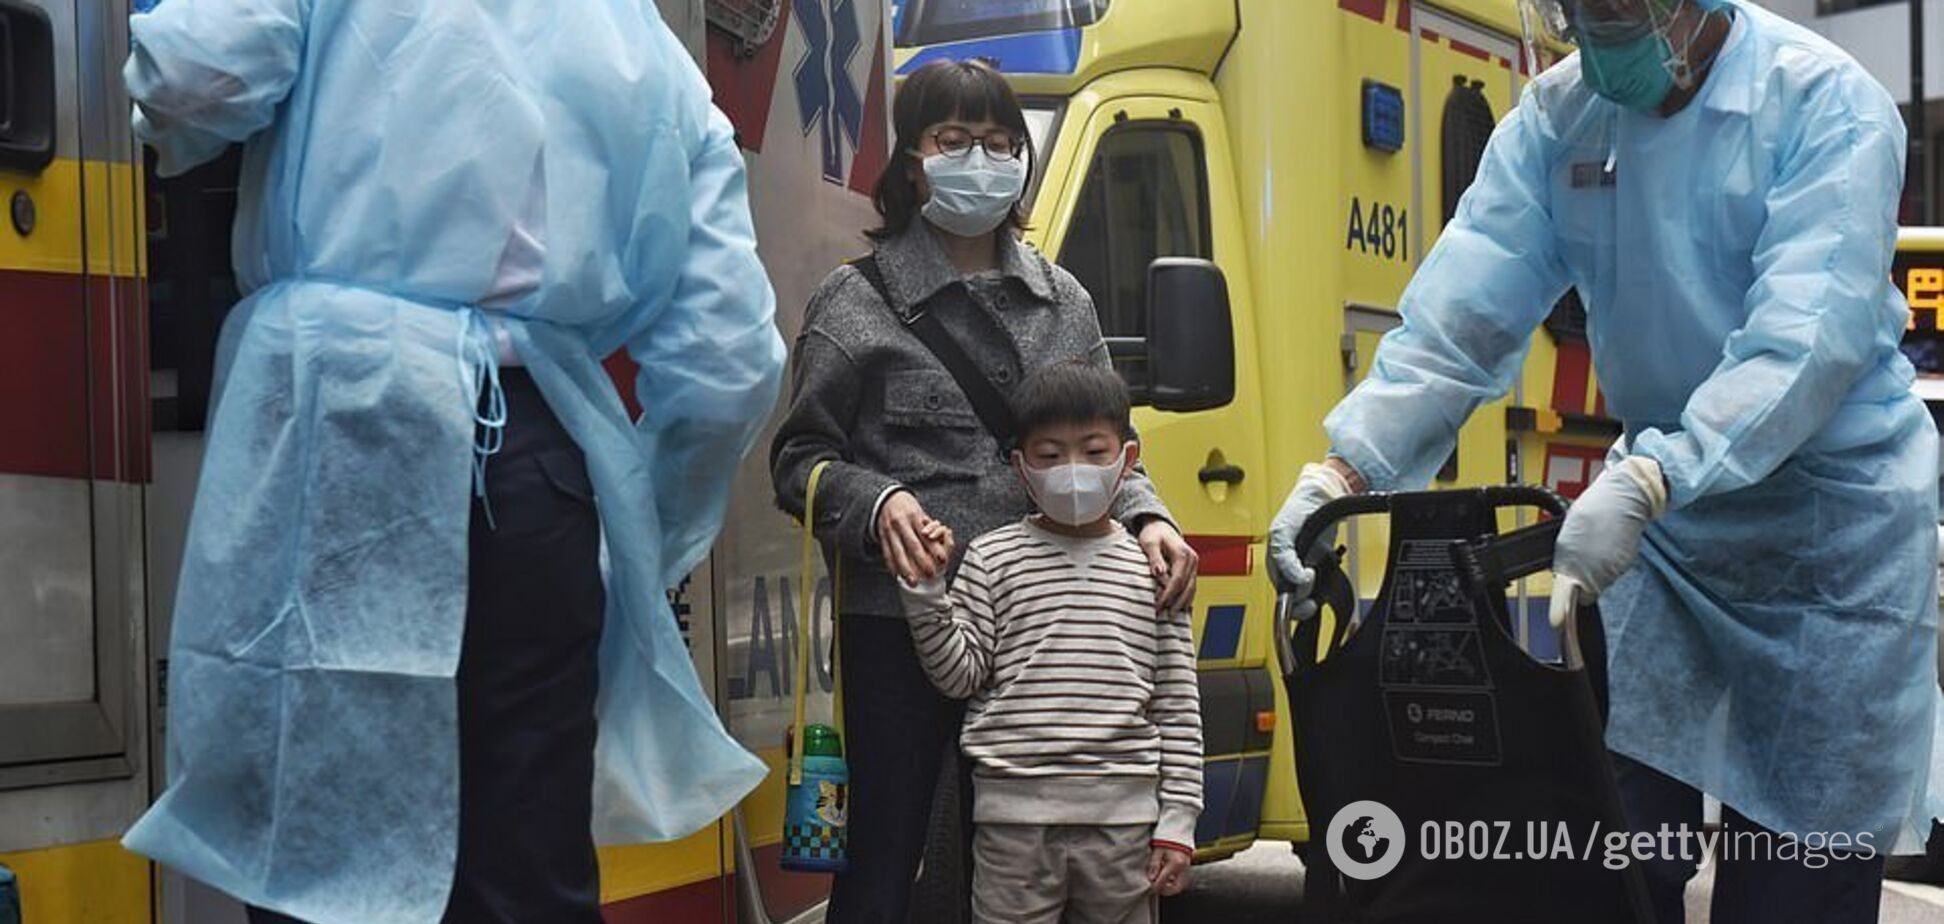 Смертельный коронавирус убил в Китае 26 человек: жуткие данные